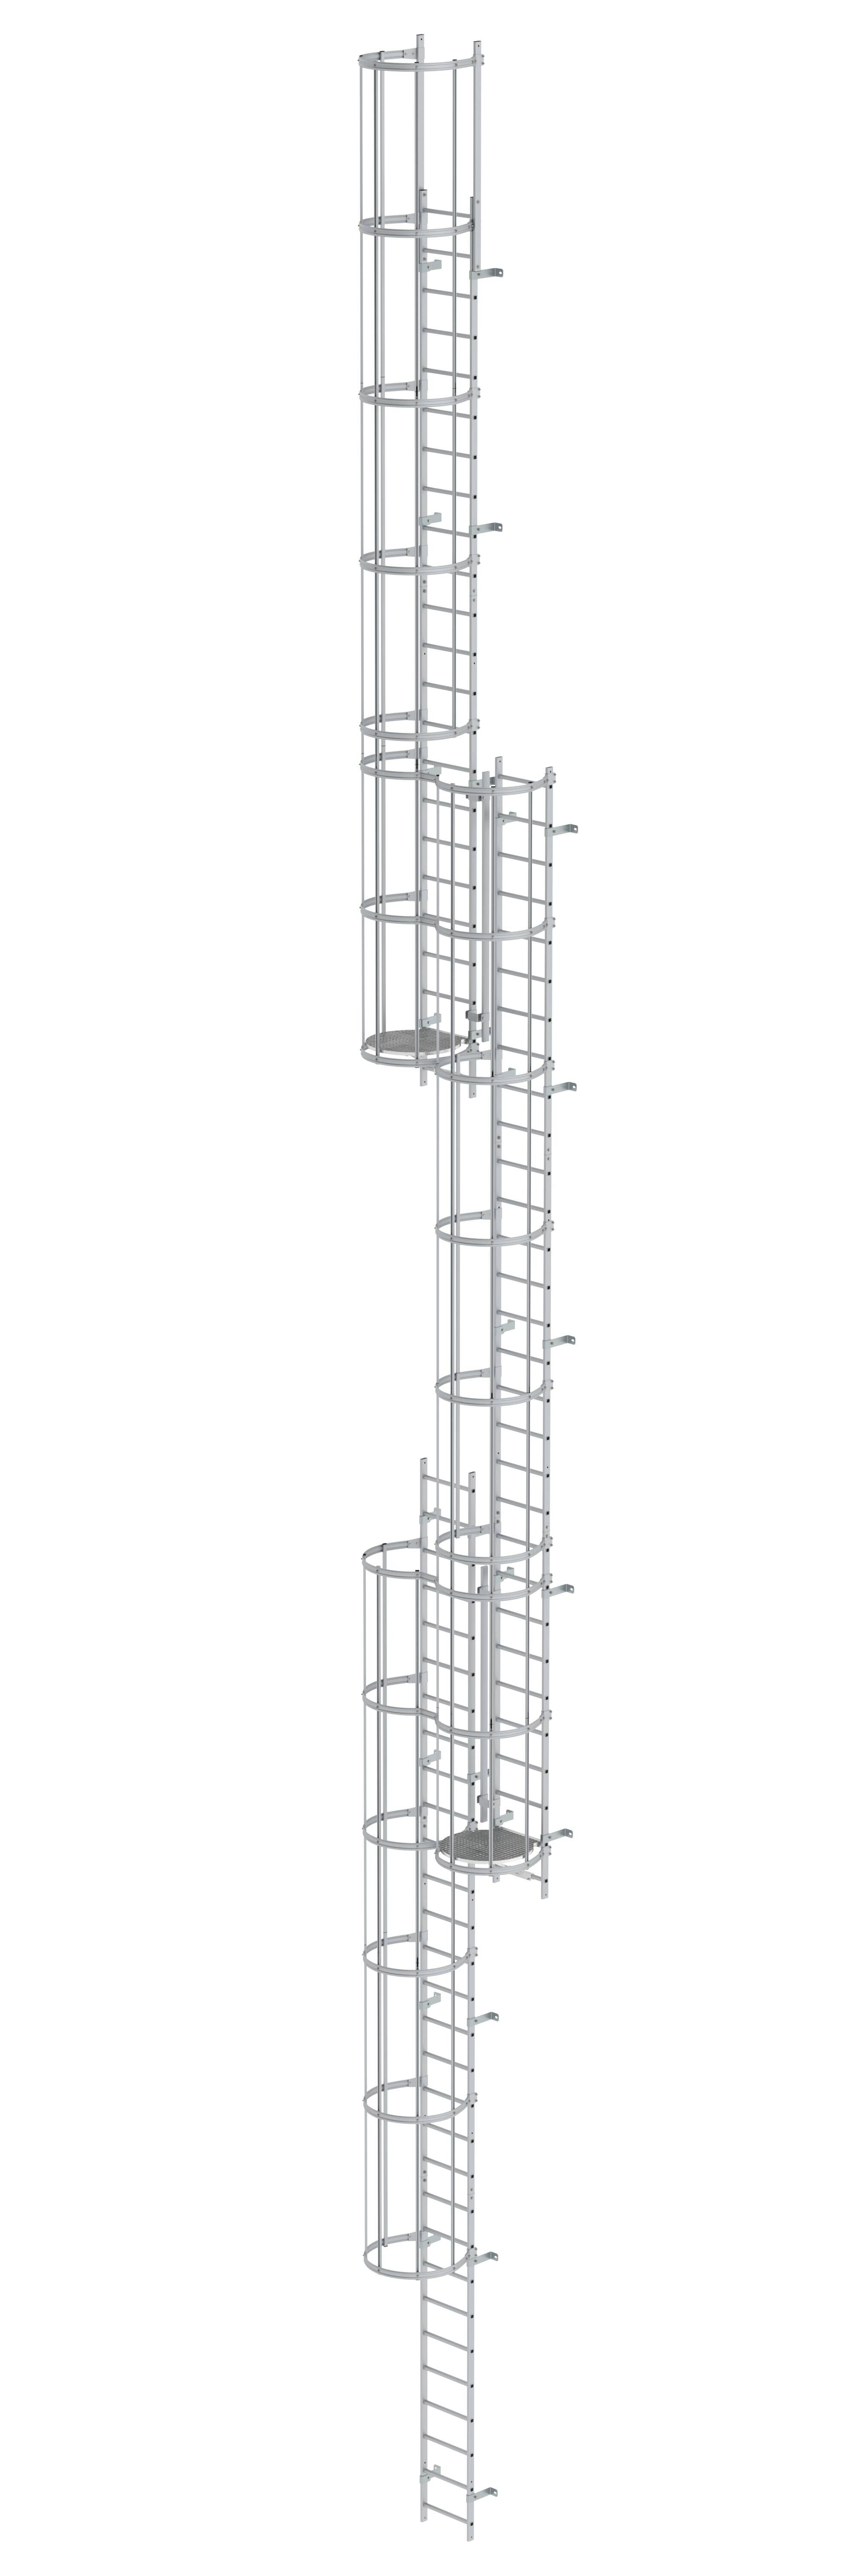 Mehrzügige Steigleiter mit Rückenschutz (Maschinen) Aluminium blank 18,84m